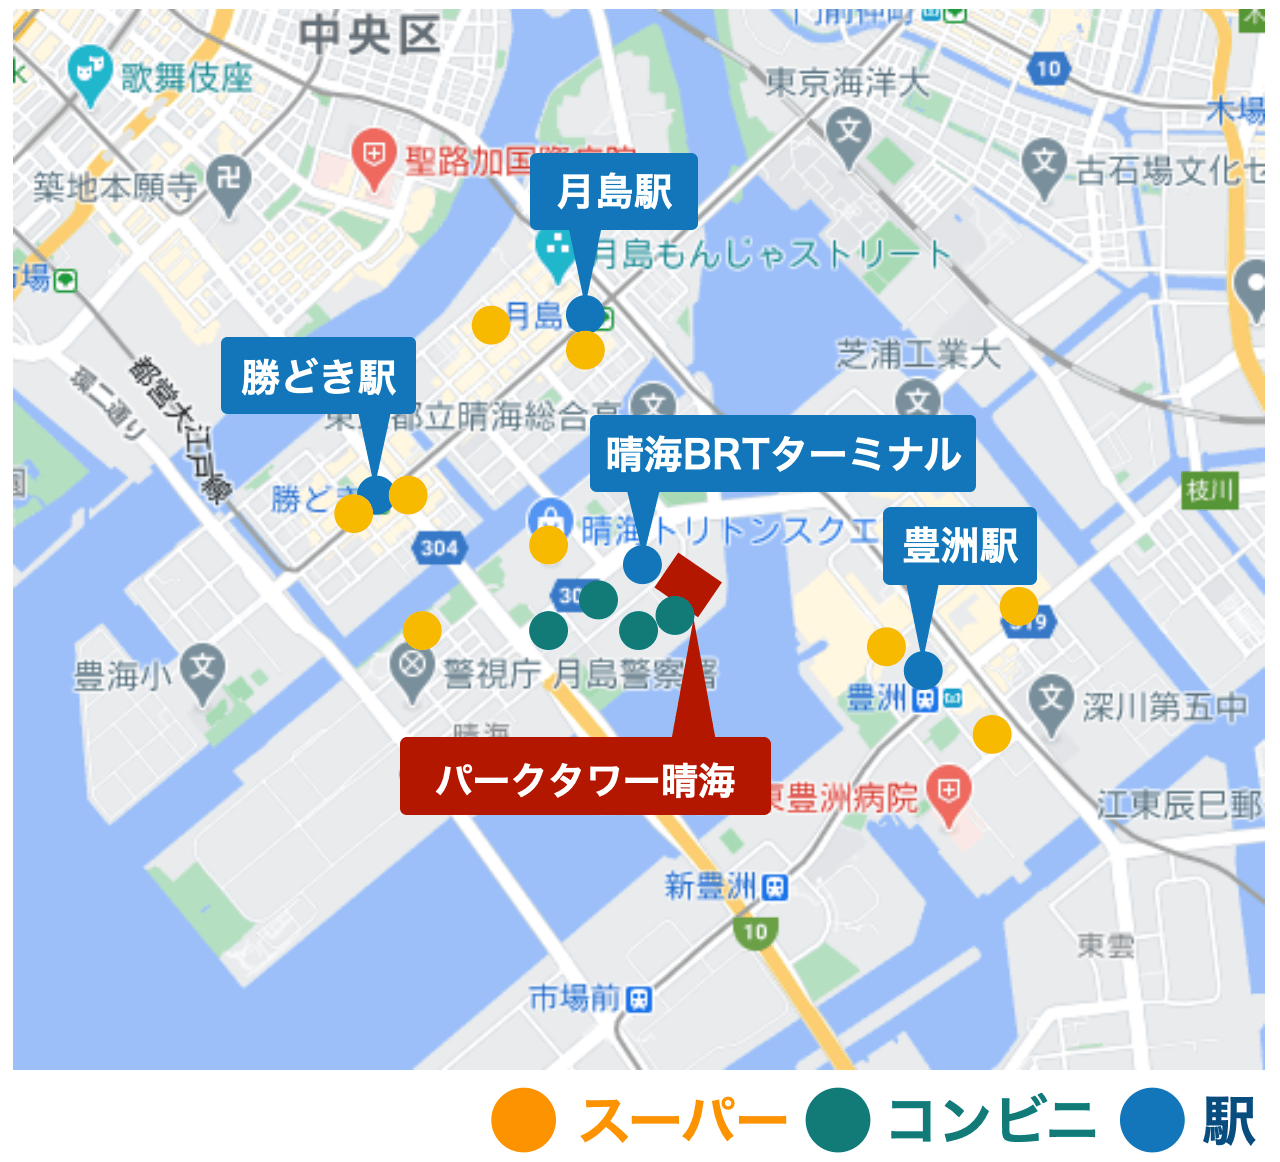 マンション周辺の施設を示したGoogleマップ